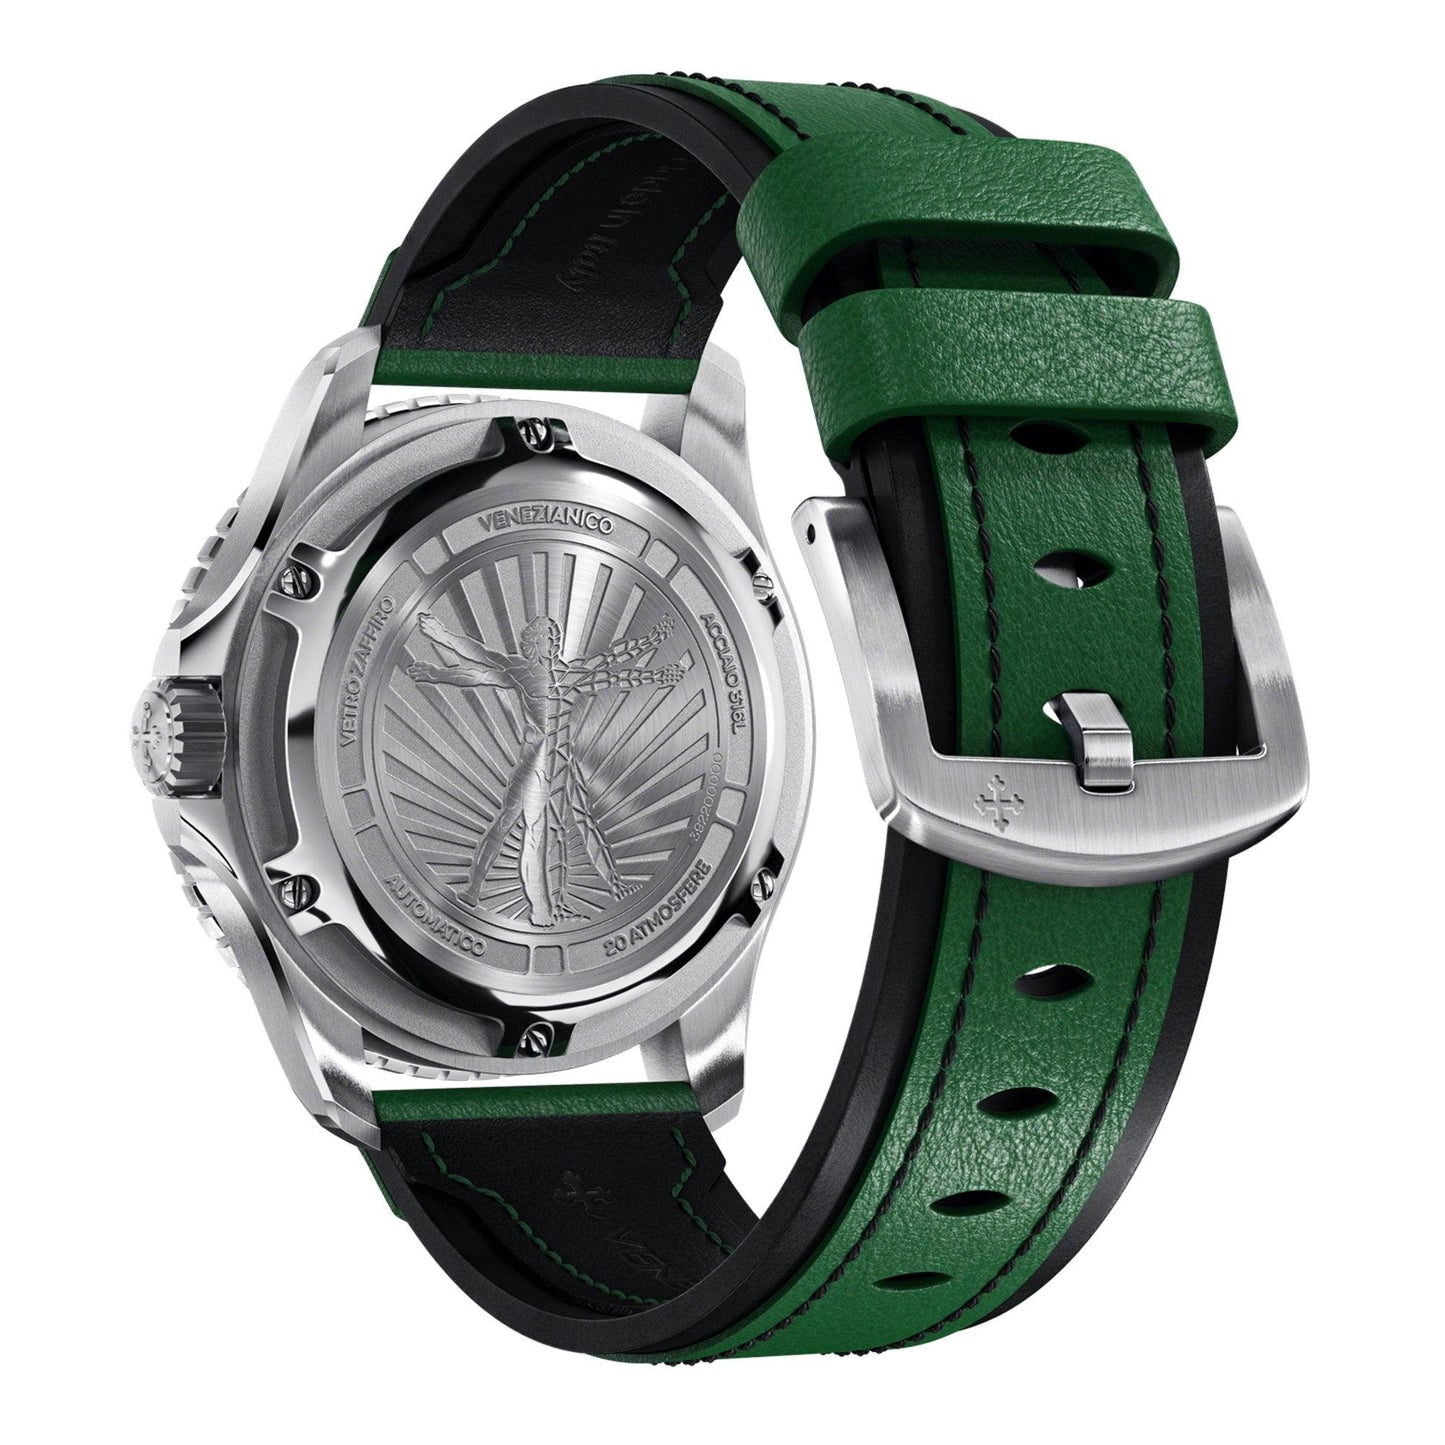 Venezianico Nereide Ultraleggero 3921501 orologio uomo meccanico - Kechiq Concept Boutique